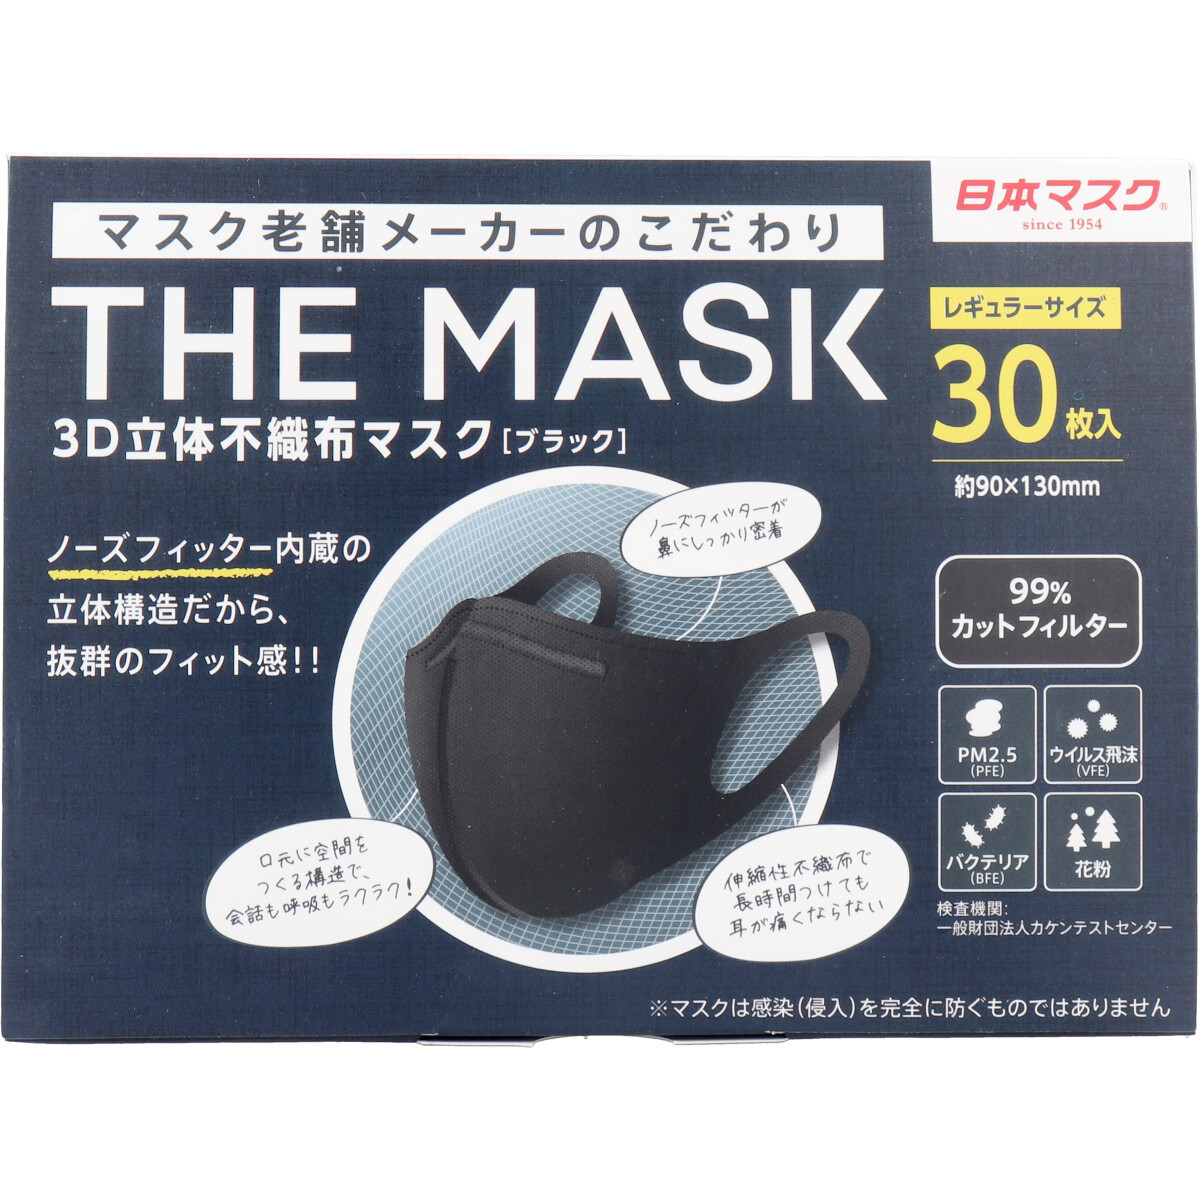 まとめ得 THE MASK 3D立体不織布マスク ブラック レギュラーサイズ 30枚入 x [16個] /k_画像2